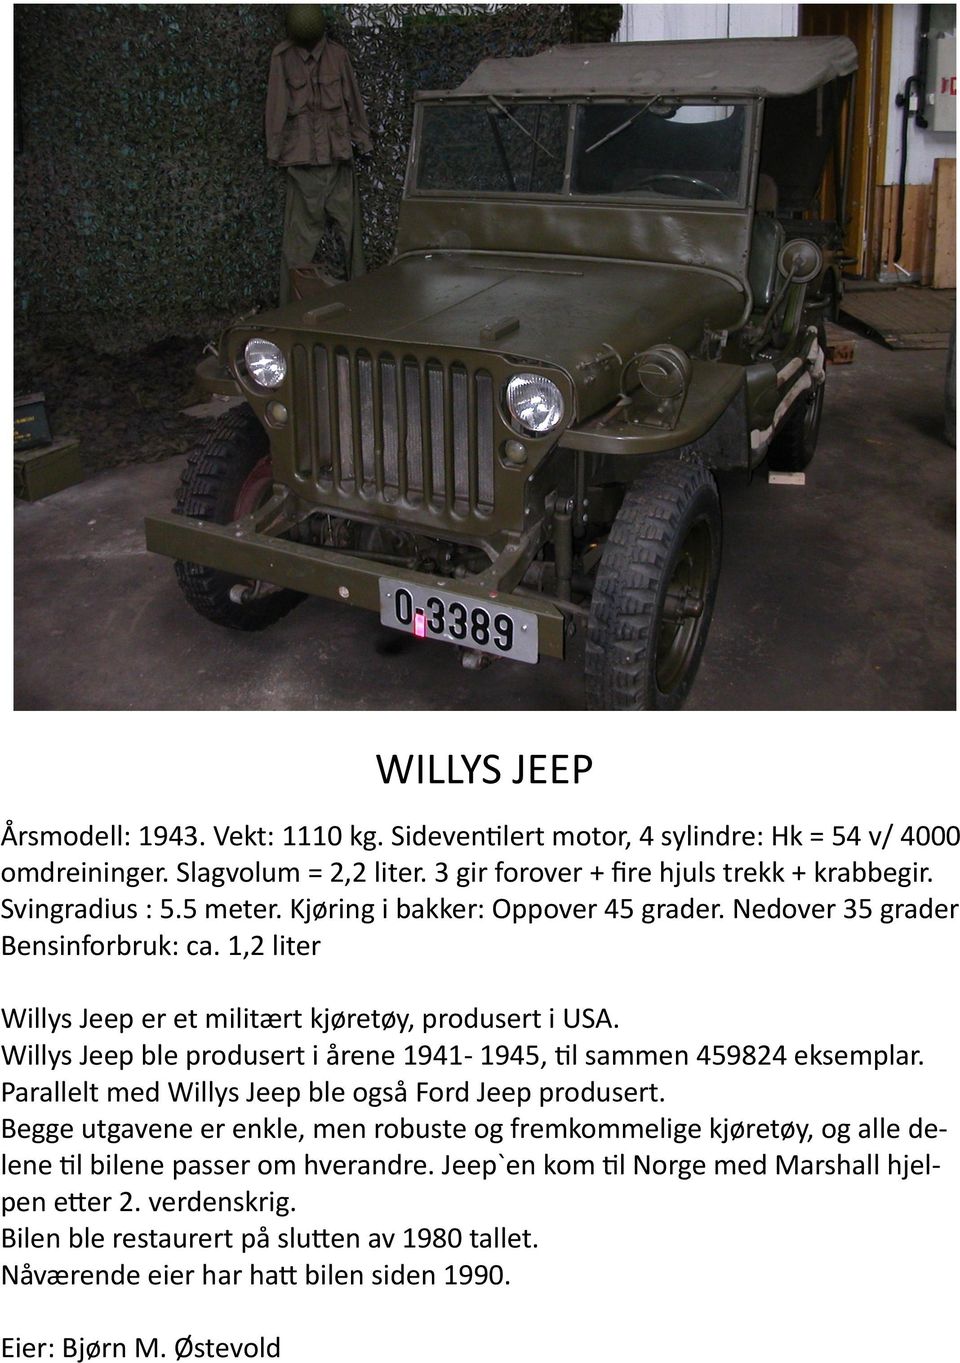 Willys Jeep ble produsert i årene 1941-1945, til sammen 459824 eksemplar. Parallelt med Willys Jeep ble også Ford Jeep produsert.